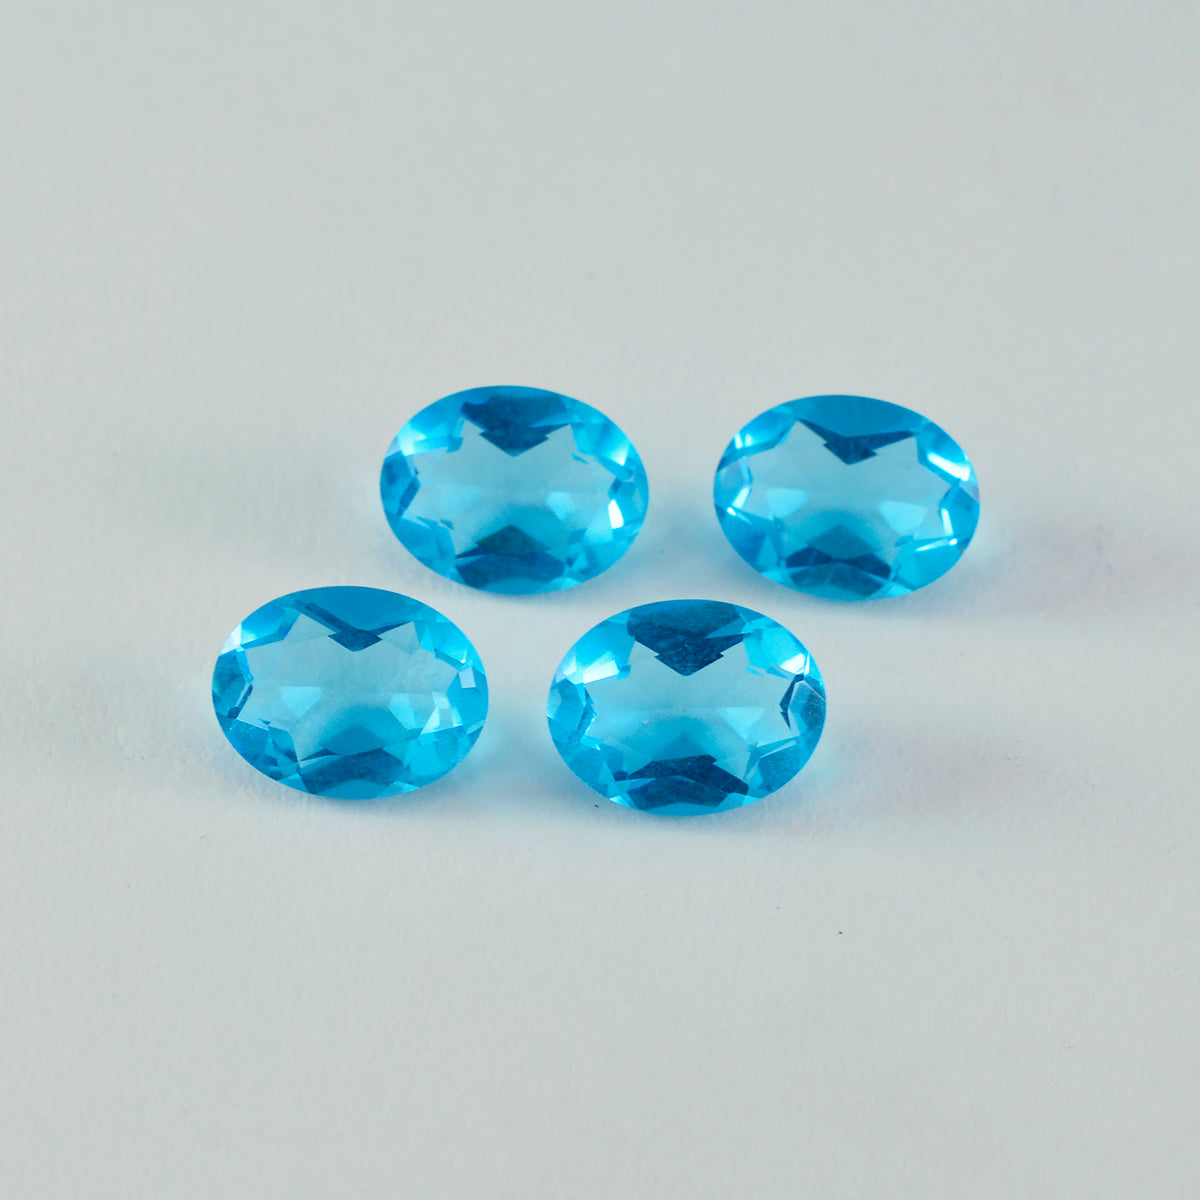 Riyogems 1 Stück blauer Topas, CZ, facettiert, 9 x 11 mm, ovale Form, hübsche lose Edelsteine von hoher Qualität